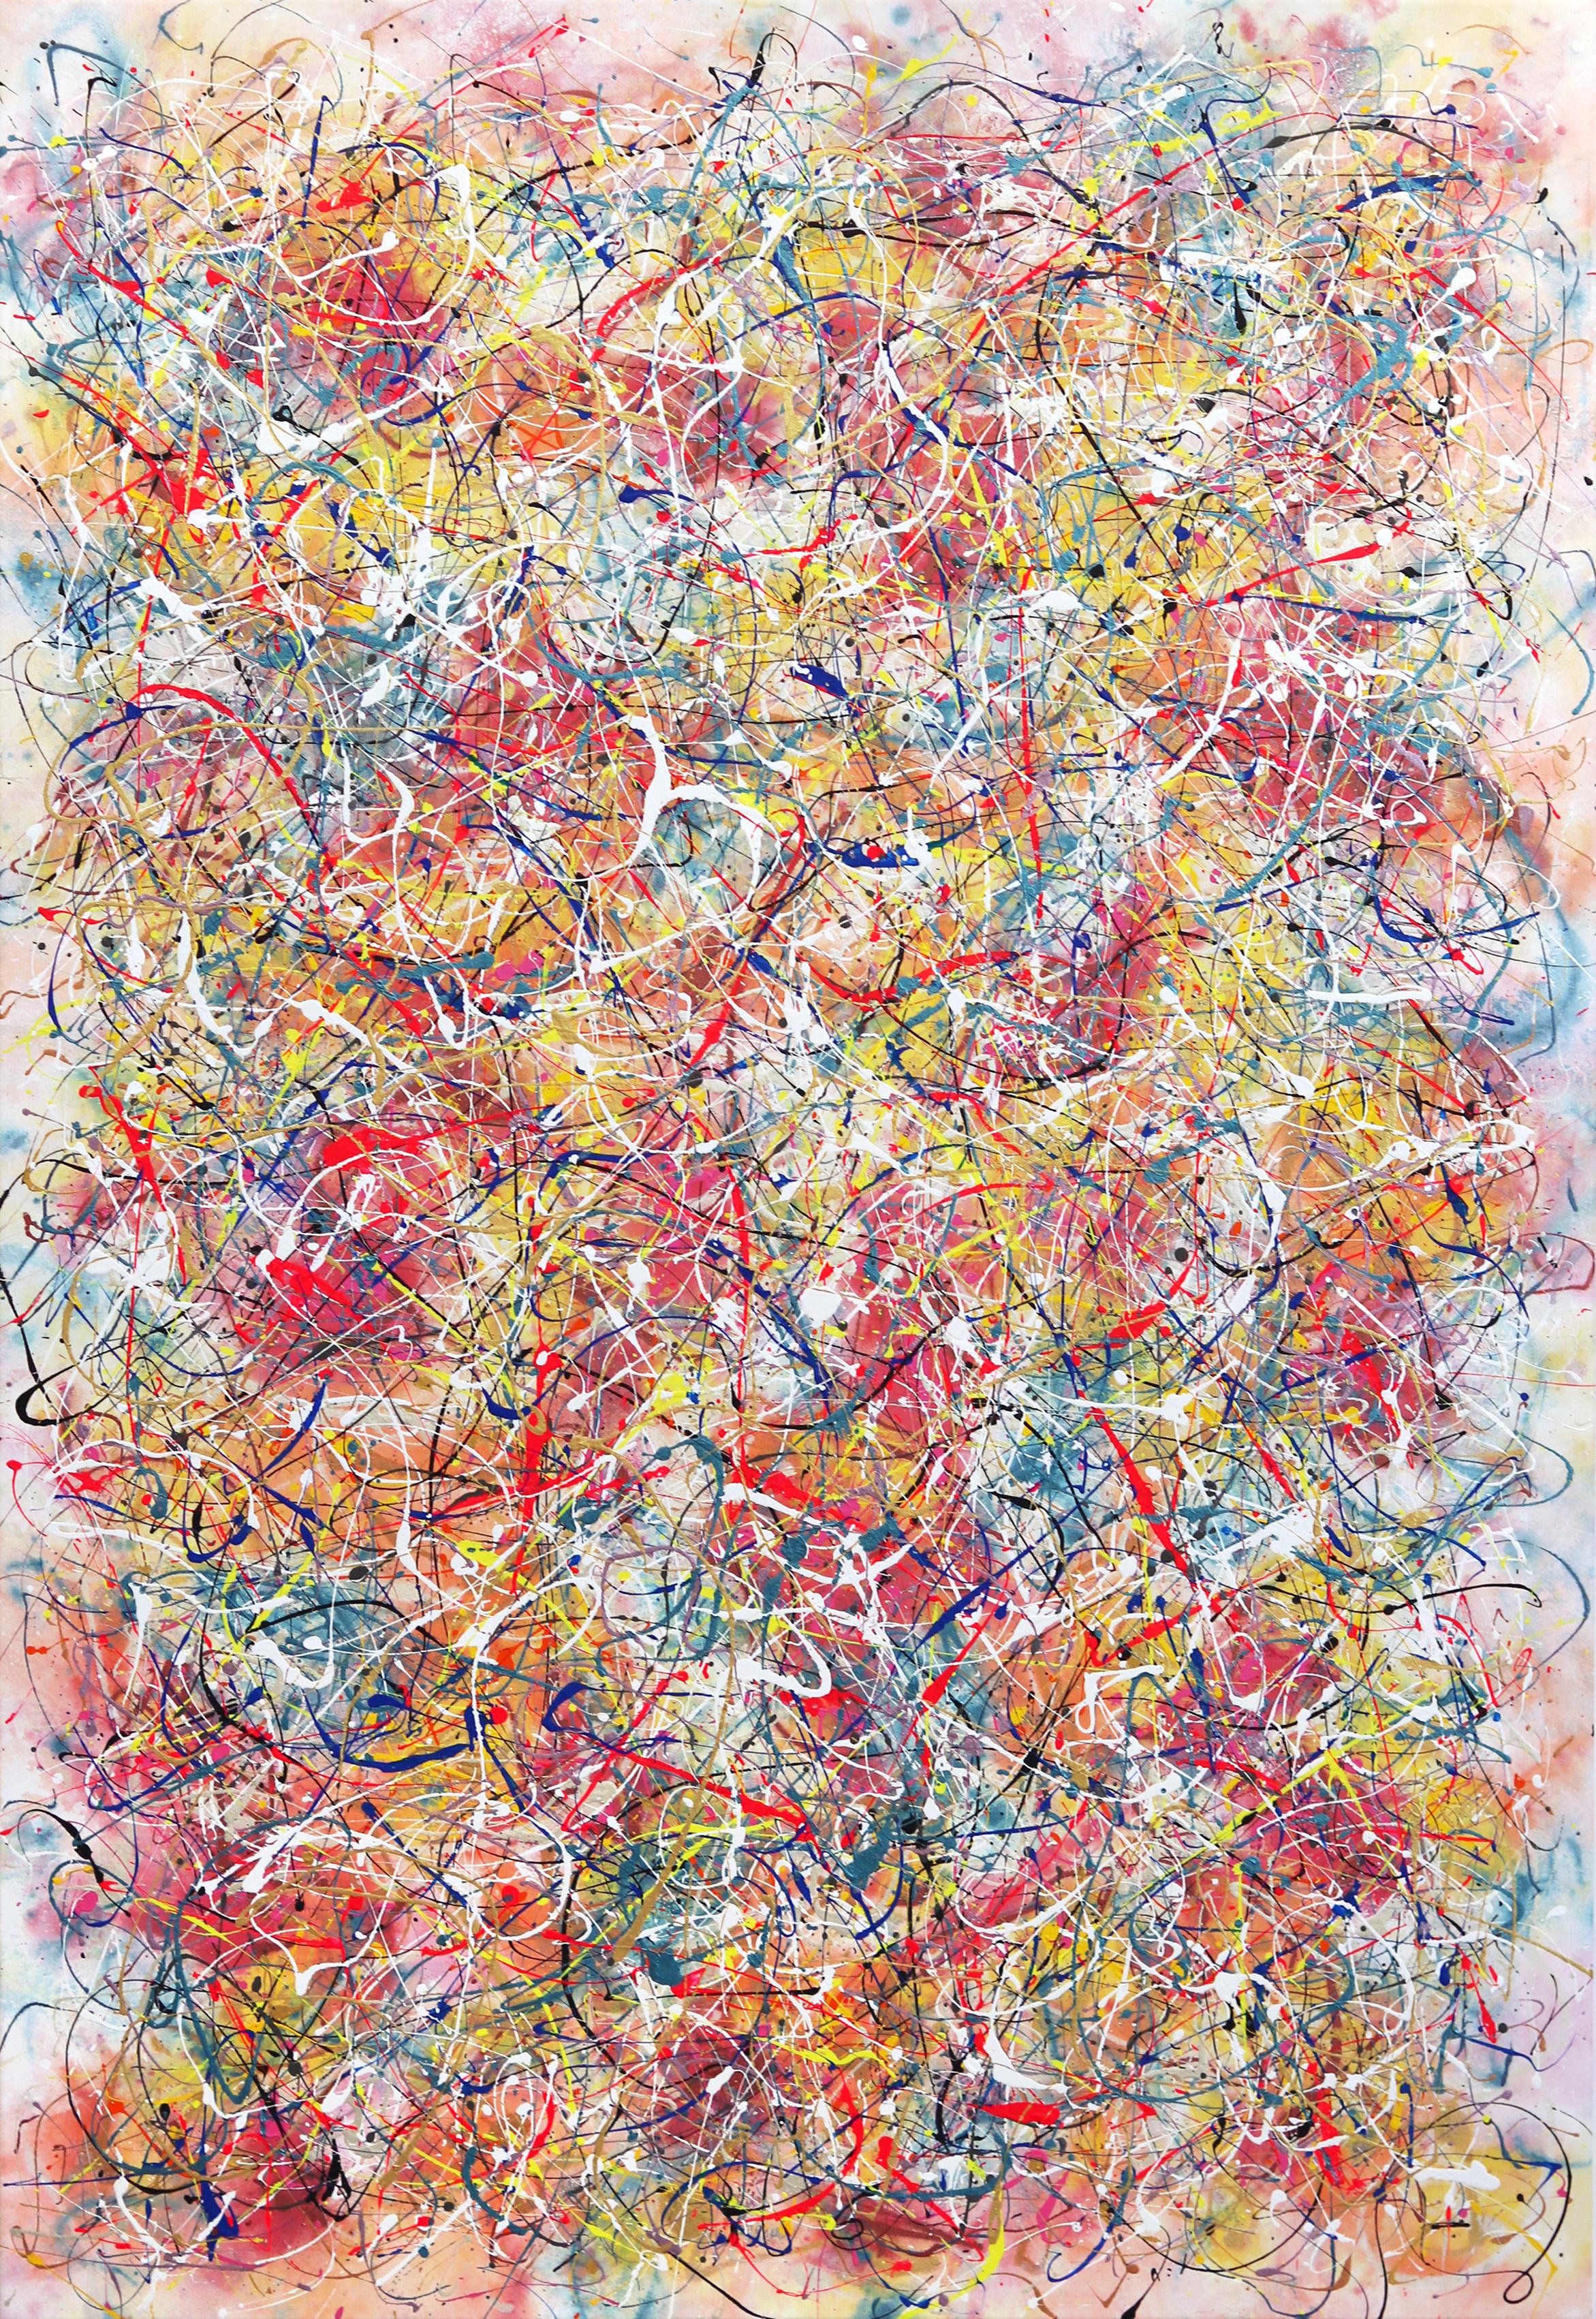 Joyful Noise - Large Colorful Unique Expressionist Action Painting